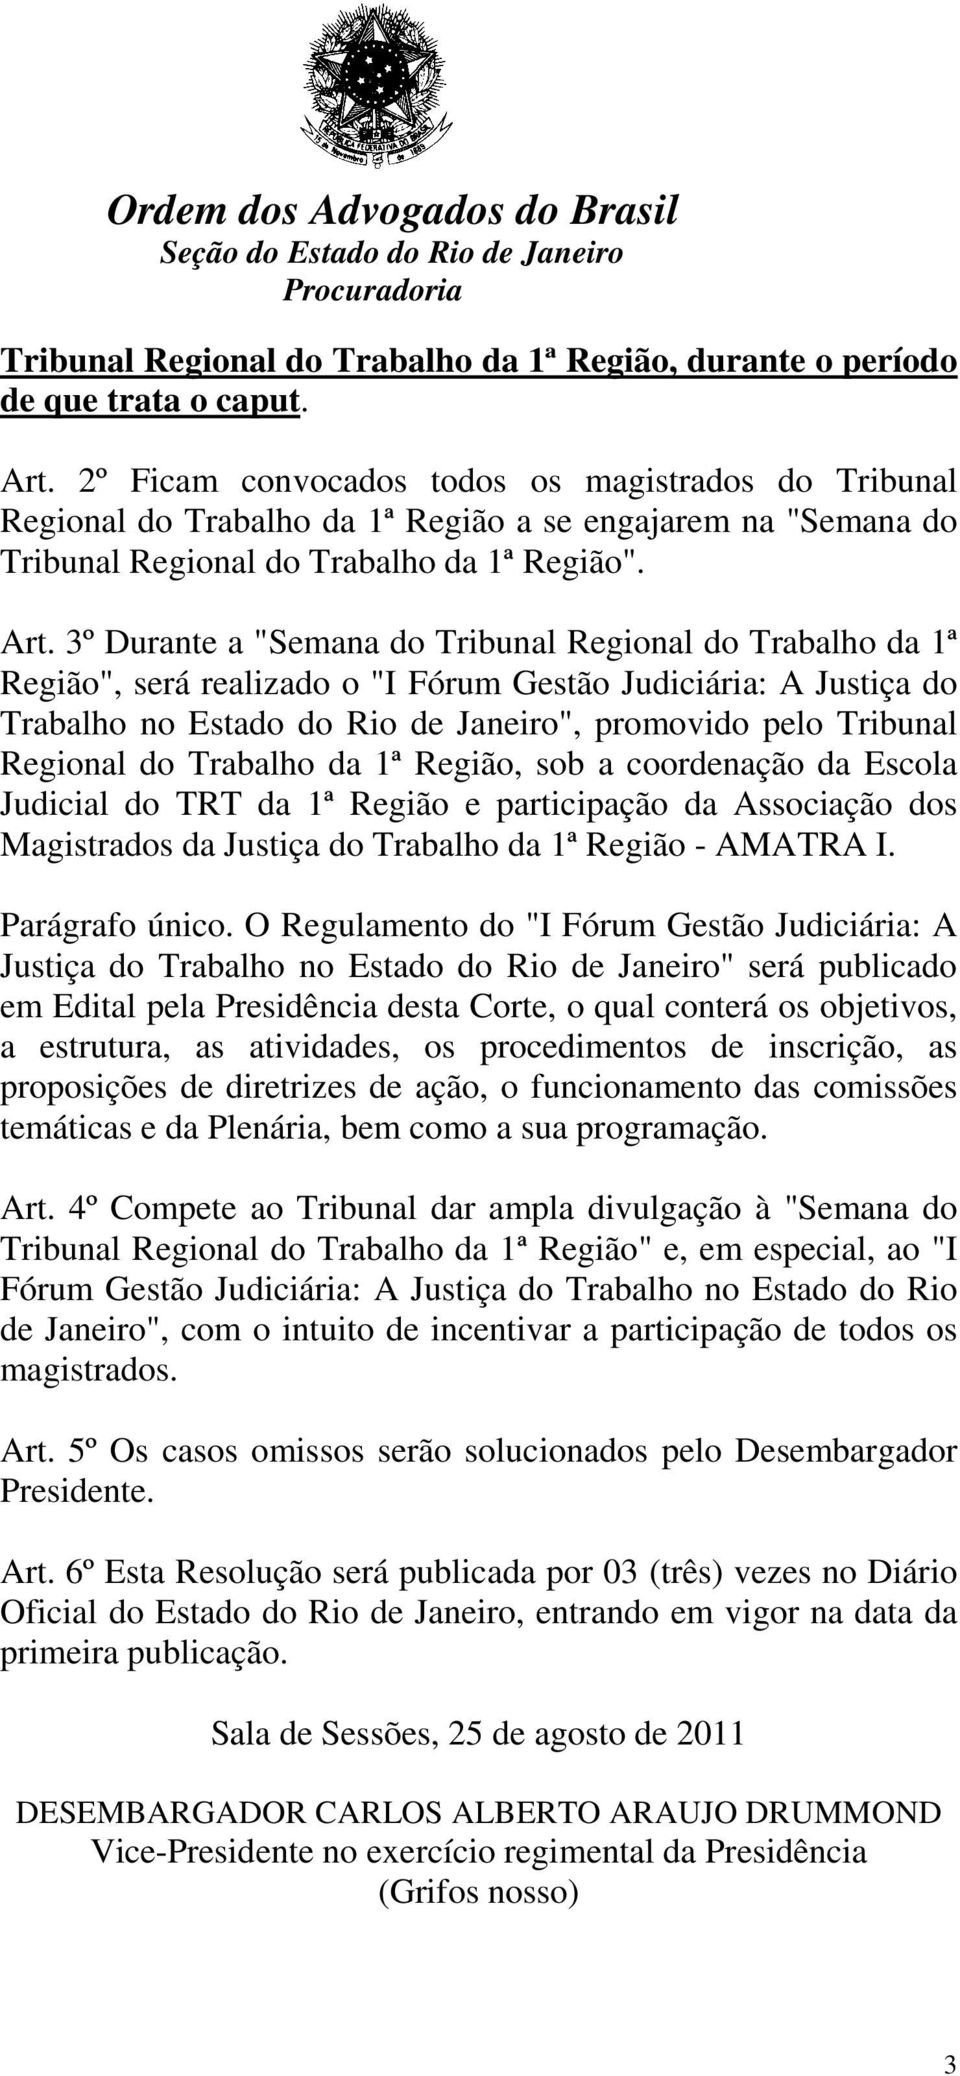 3º Durante a "Semana do Tribunal Regional do Trabalho da 1ª Região", será realizado o "I Fórum Gestão Judiciária: A Justiça do Trabalho no Estado do Rio de Janeiro", promovido pelo Tribunal Regional